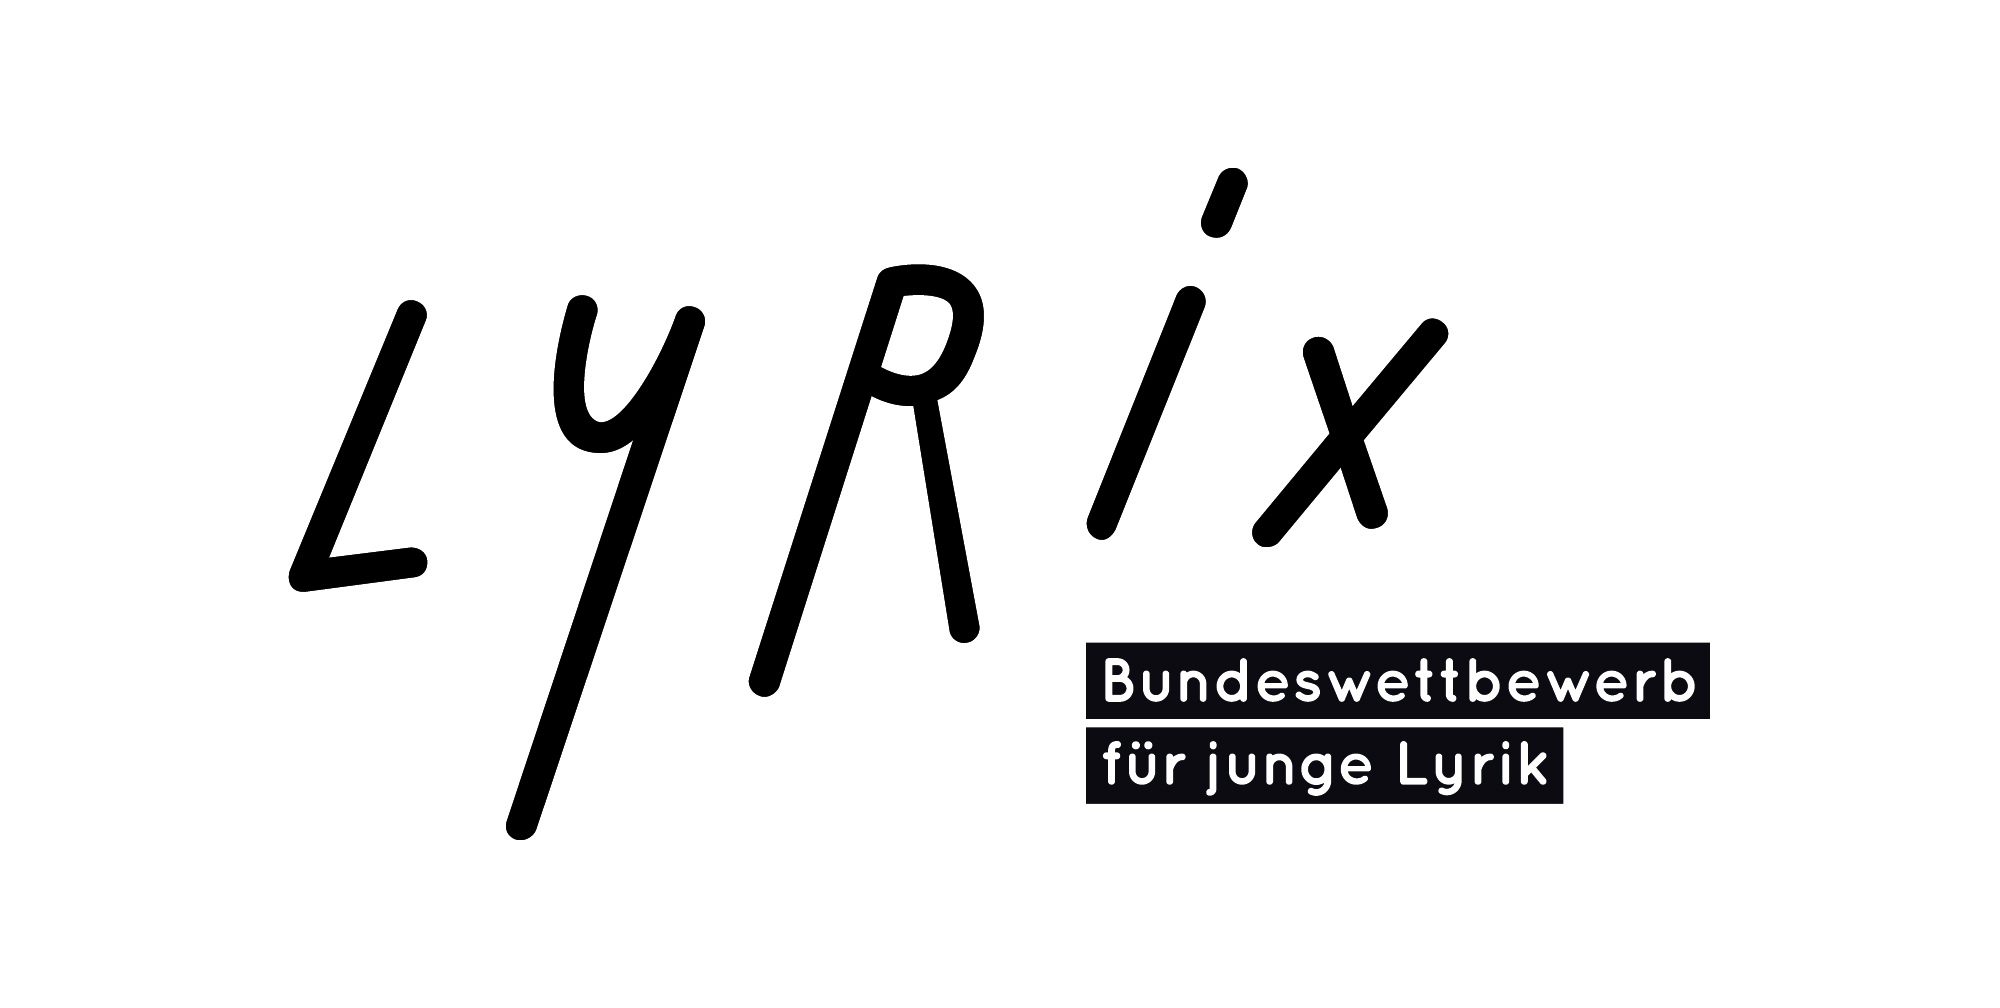 Bundeswettbewerb für junge Lyrik ‘lyrix’ startet mit neuen Wettbewerbsbedingungen ins Jahr 2022